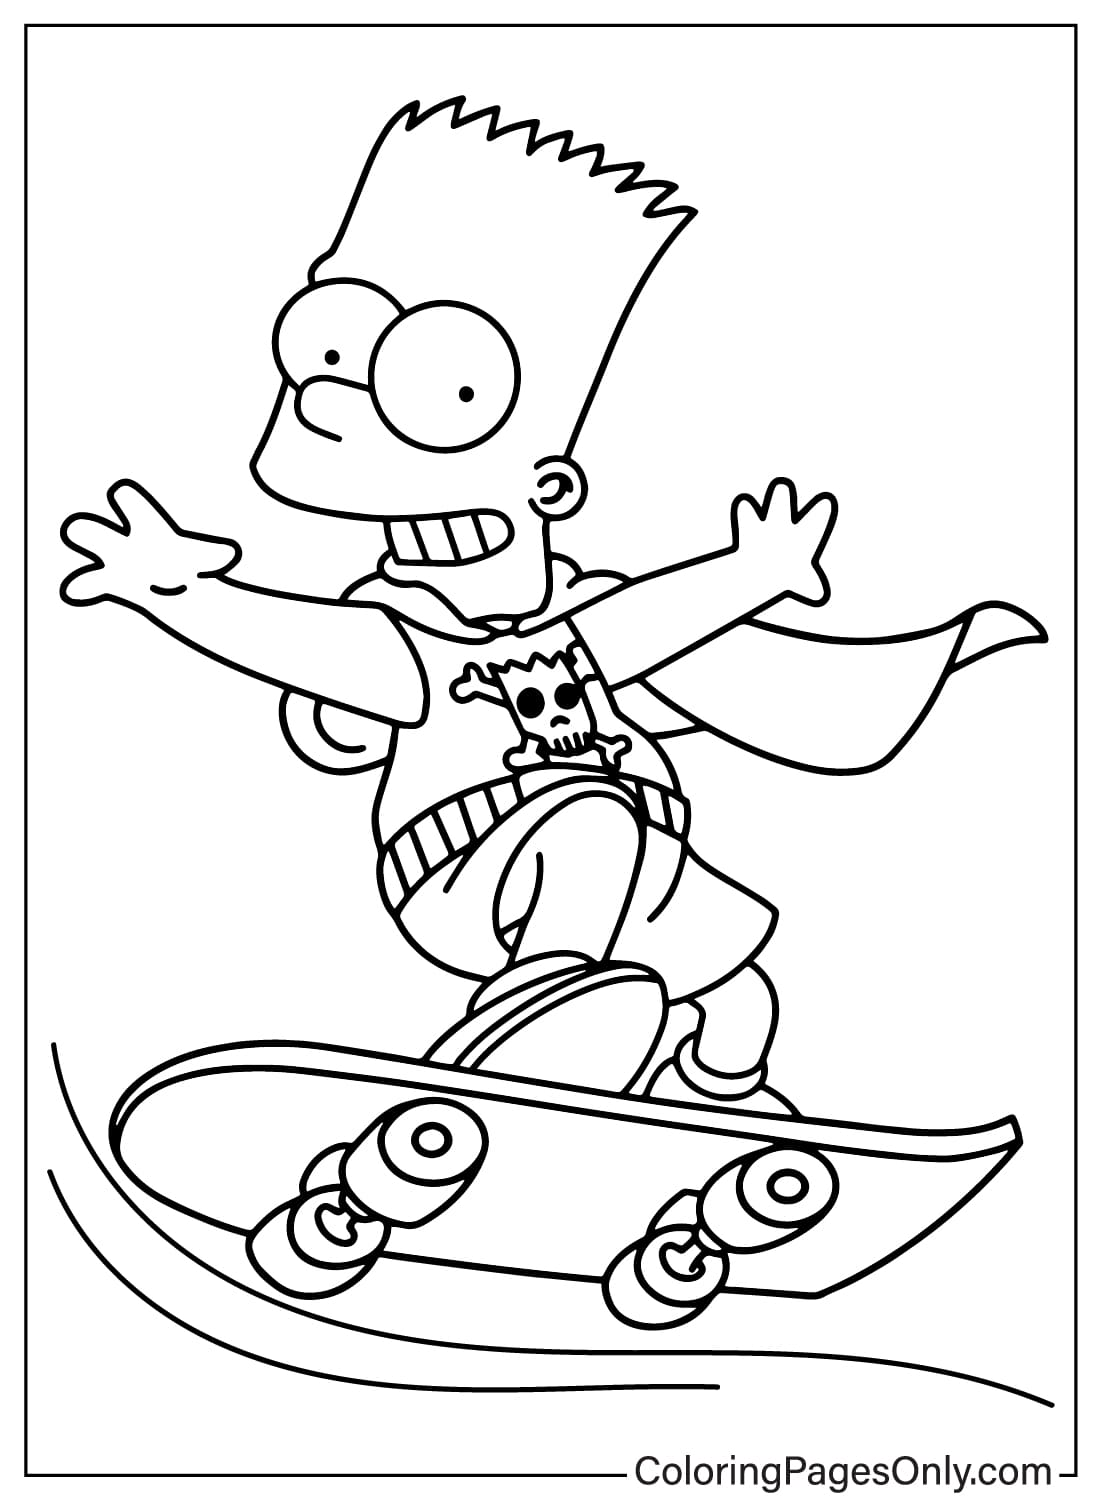 Раскраска Барт Симпсон из Симпсонов